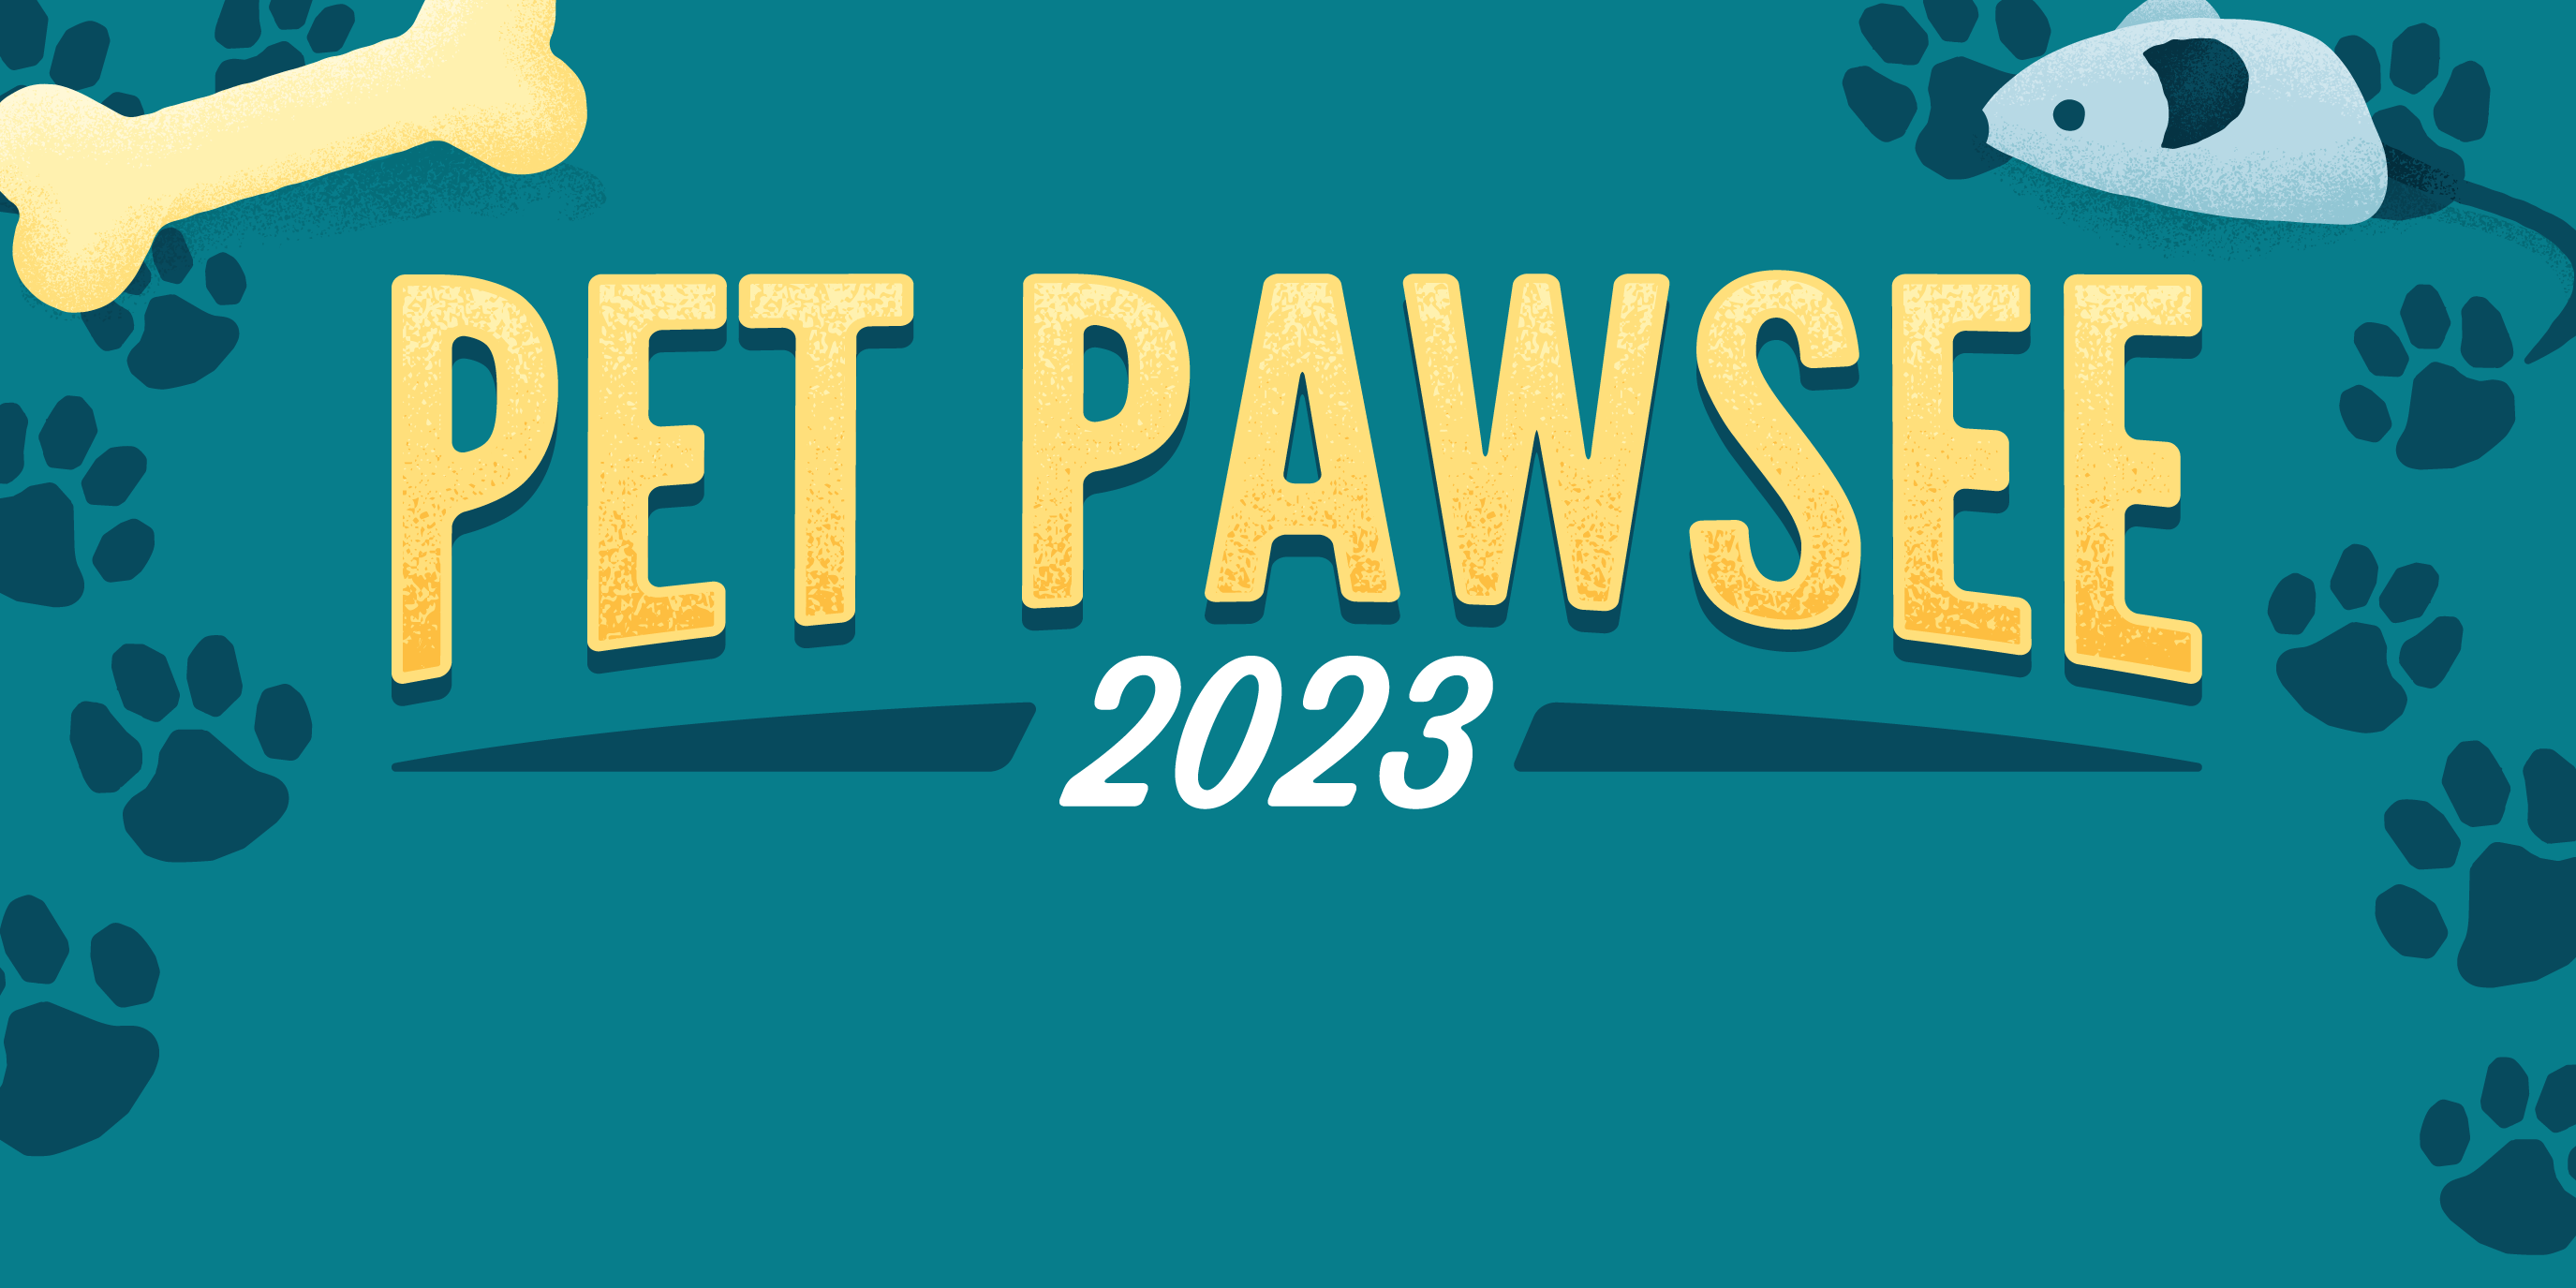 Pet Pawsee 2023